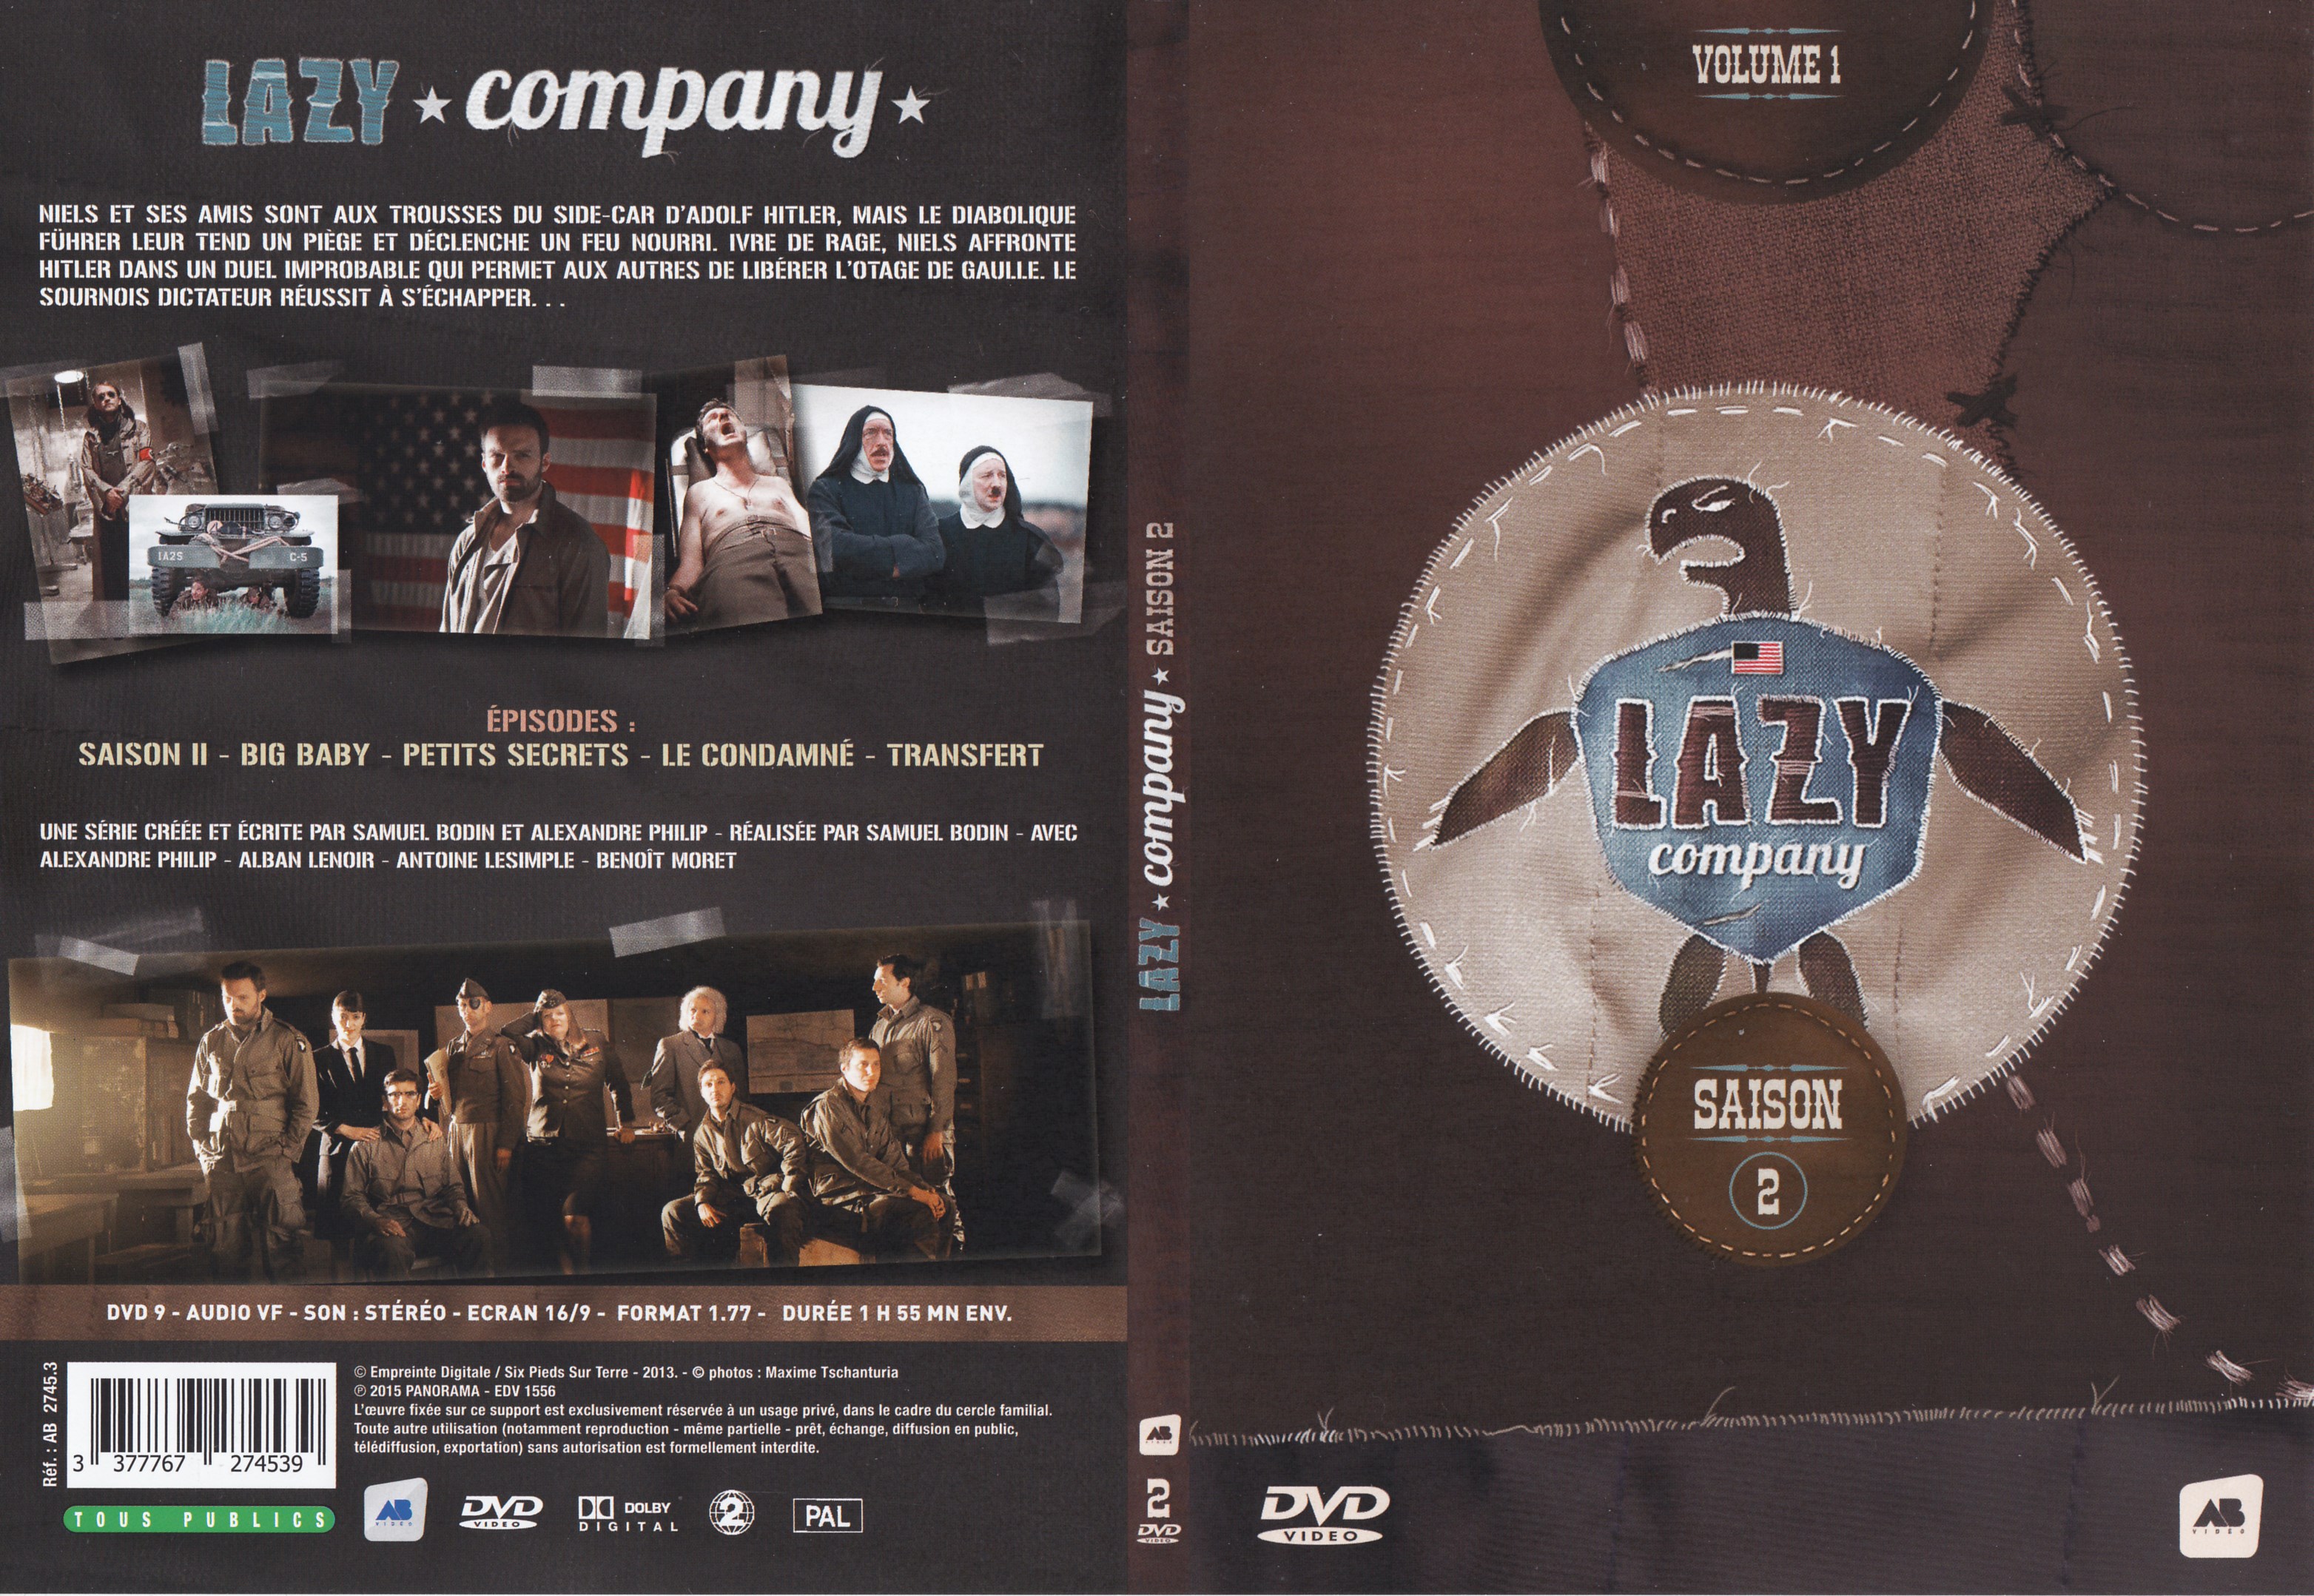 Jaquette DVD Lazy company Saison 2 vol 1